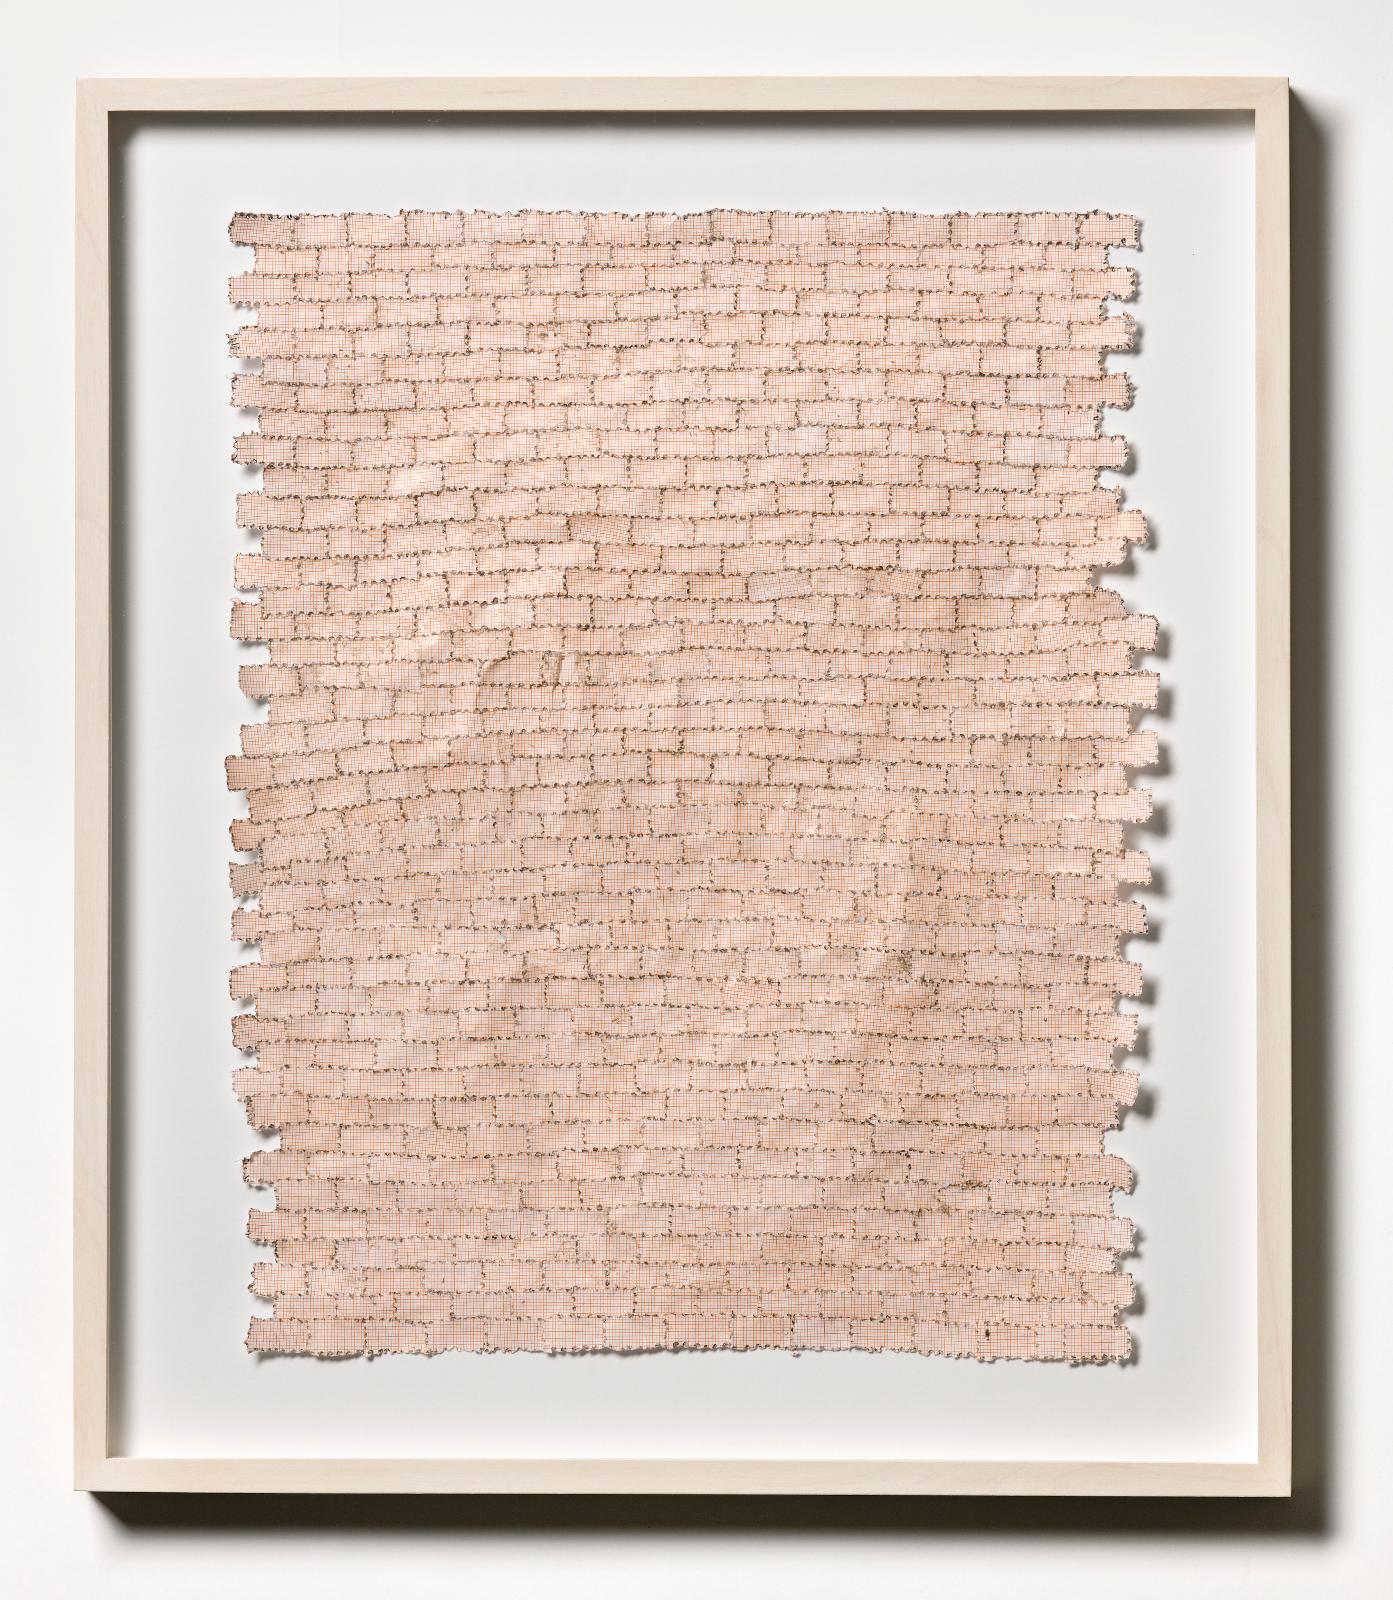 Martin Bruno Schmid, Bohrzeichnung (Mauer), 2009, Bleistiftbohrung in Millimeter-Papier, 40 cm x 34 cm, gerahmt, Preis auf Anfrage